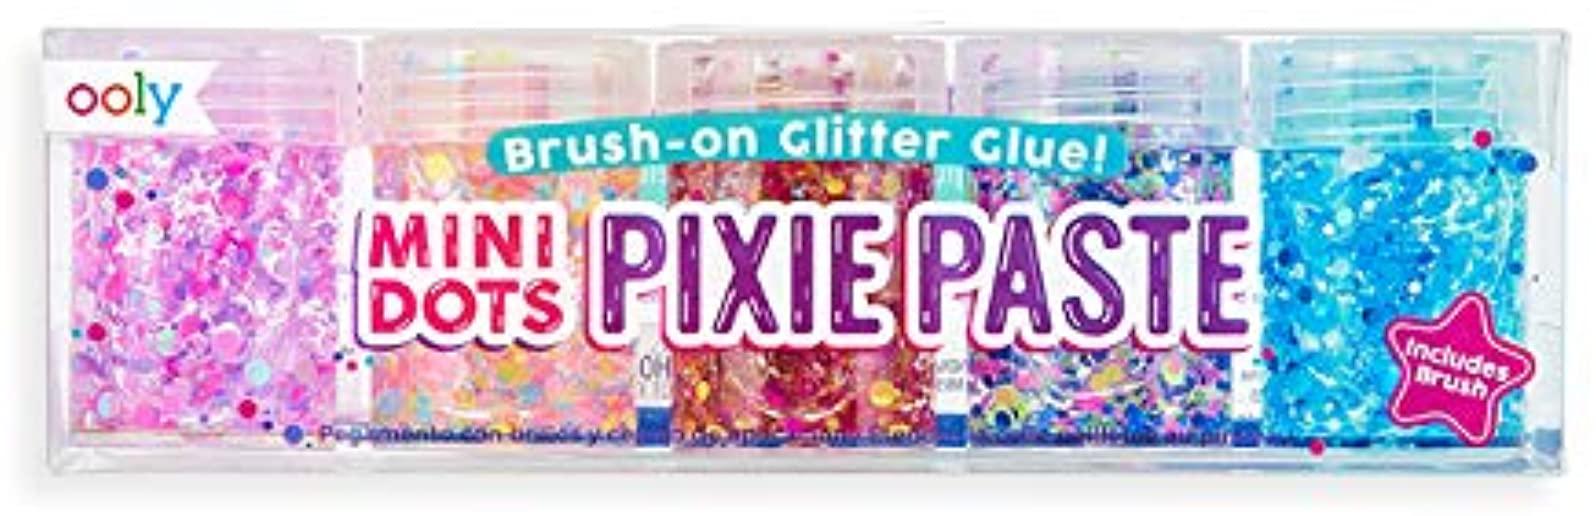 Mini Dots Pixie Paste Glitte Glue - 6 PC Set